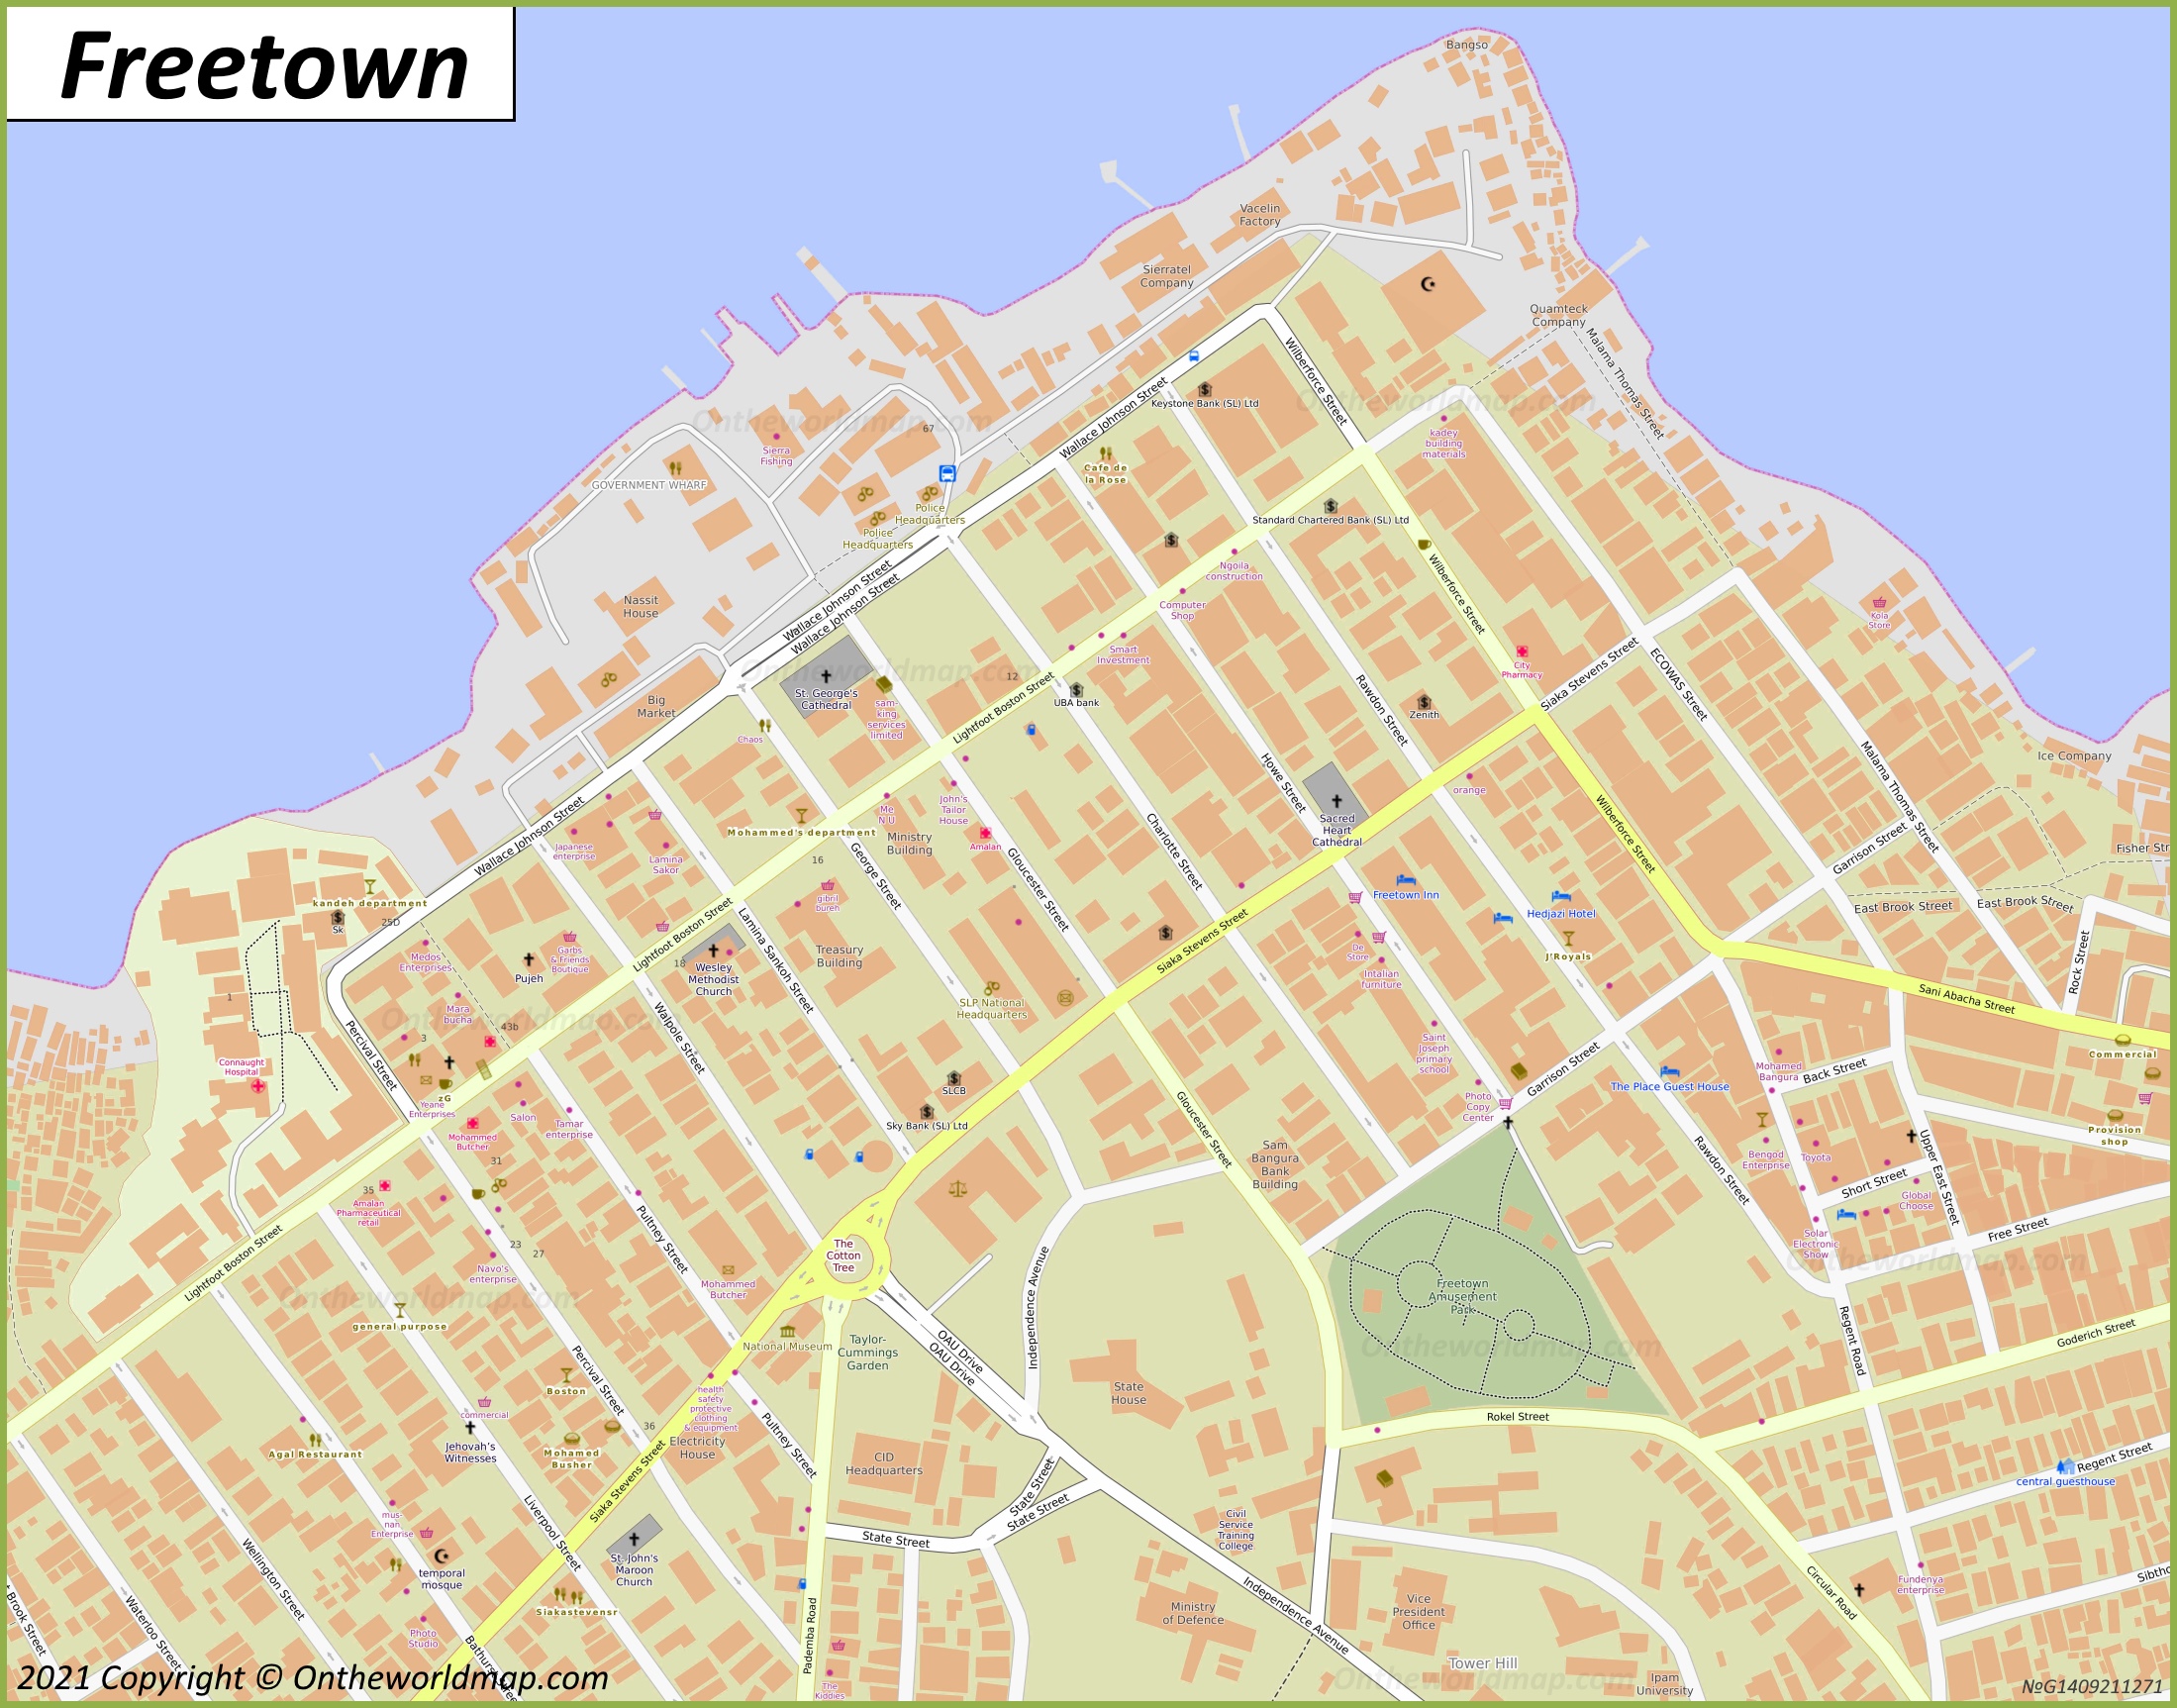 Freetown City Center Map